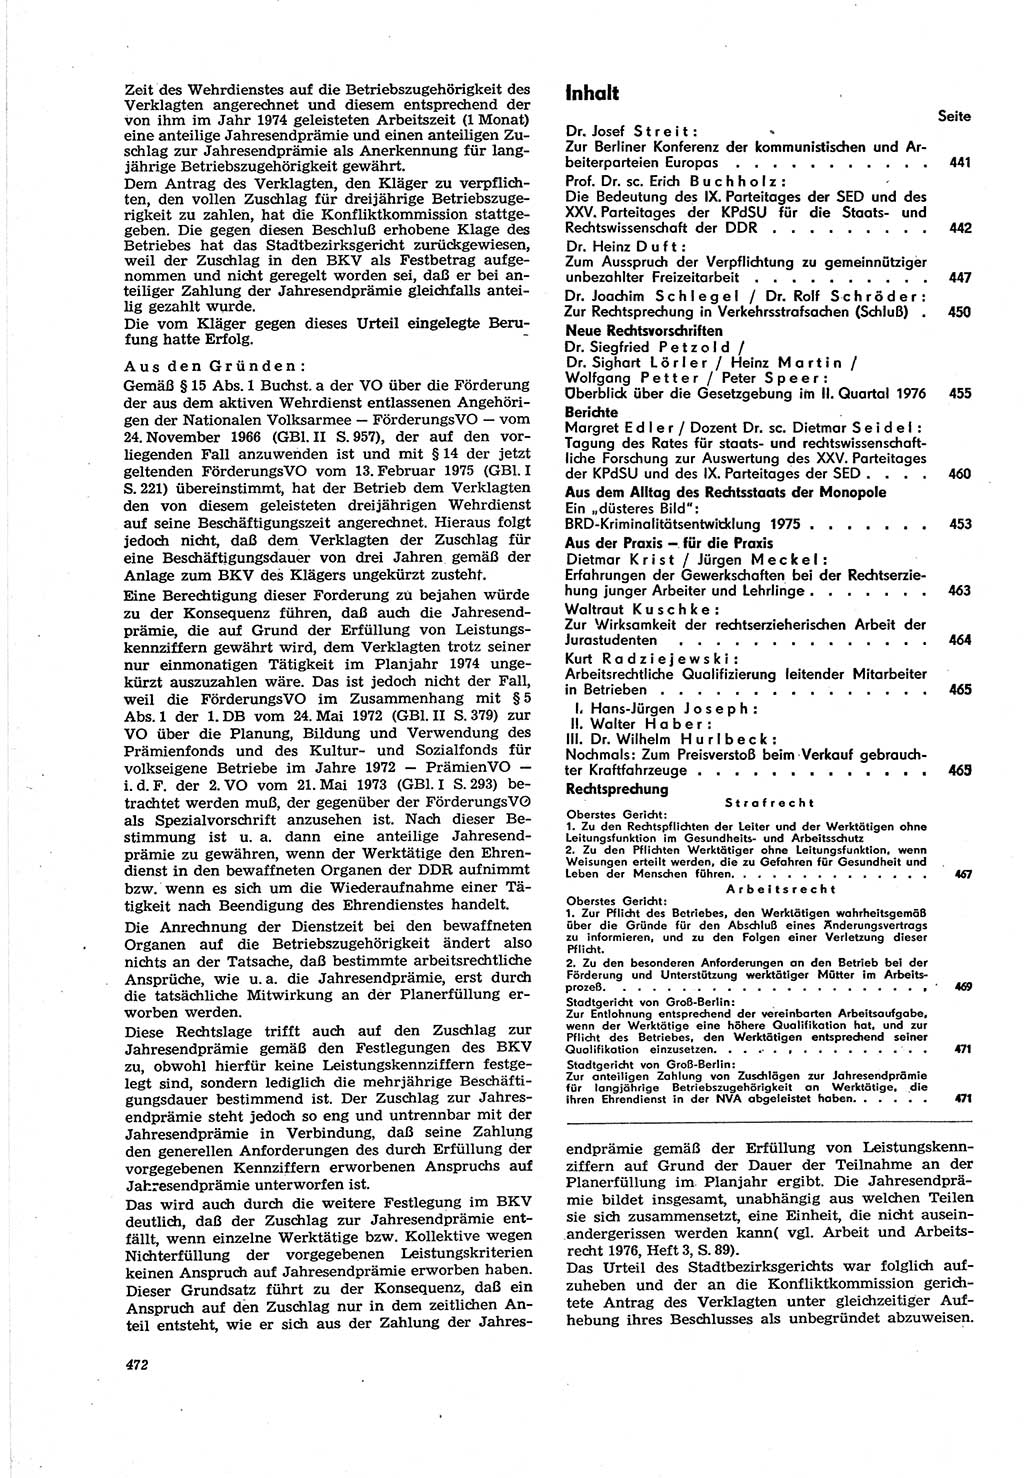 Neue Justiz (NJ), Zeitschrift für Recht und Rechtswissenschaft [Deutsche Demokratische Republik (DDR)], 30. Jahrgang 1976, Seite 472 (NJ DDR 1976, S. 472)